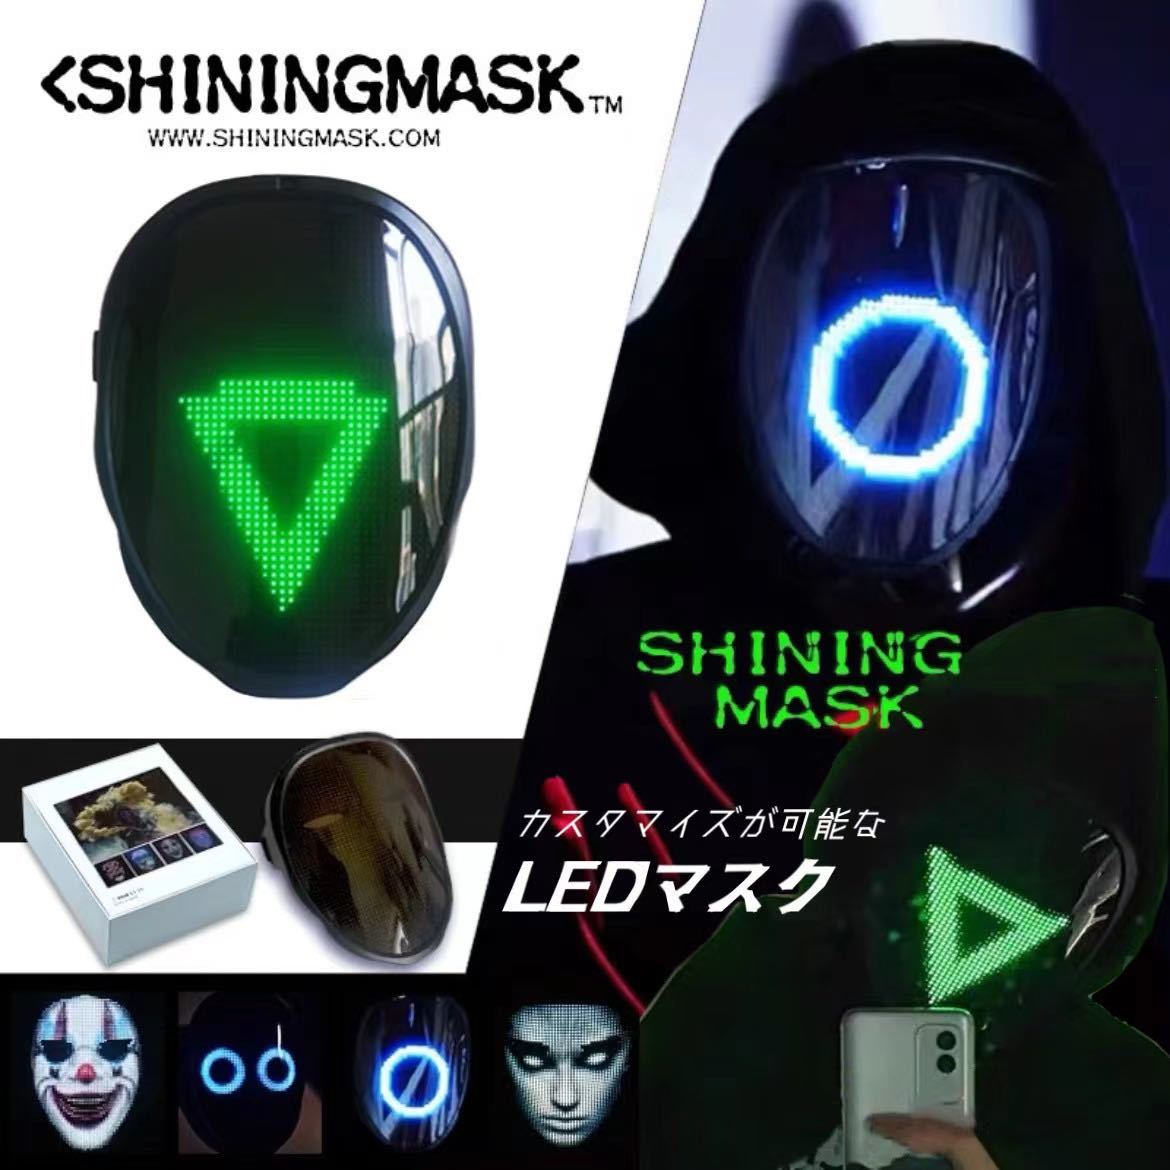 SHINING LED マスク サイバーパンク アプリ操作 プログラミング カスタマイズ ハロウィン ディスプレイ お面 最先端 コスプレ イカゲーム